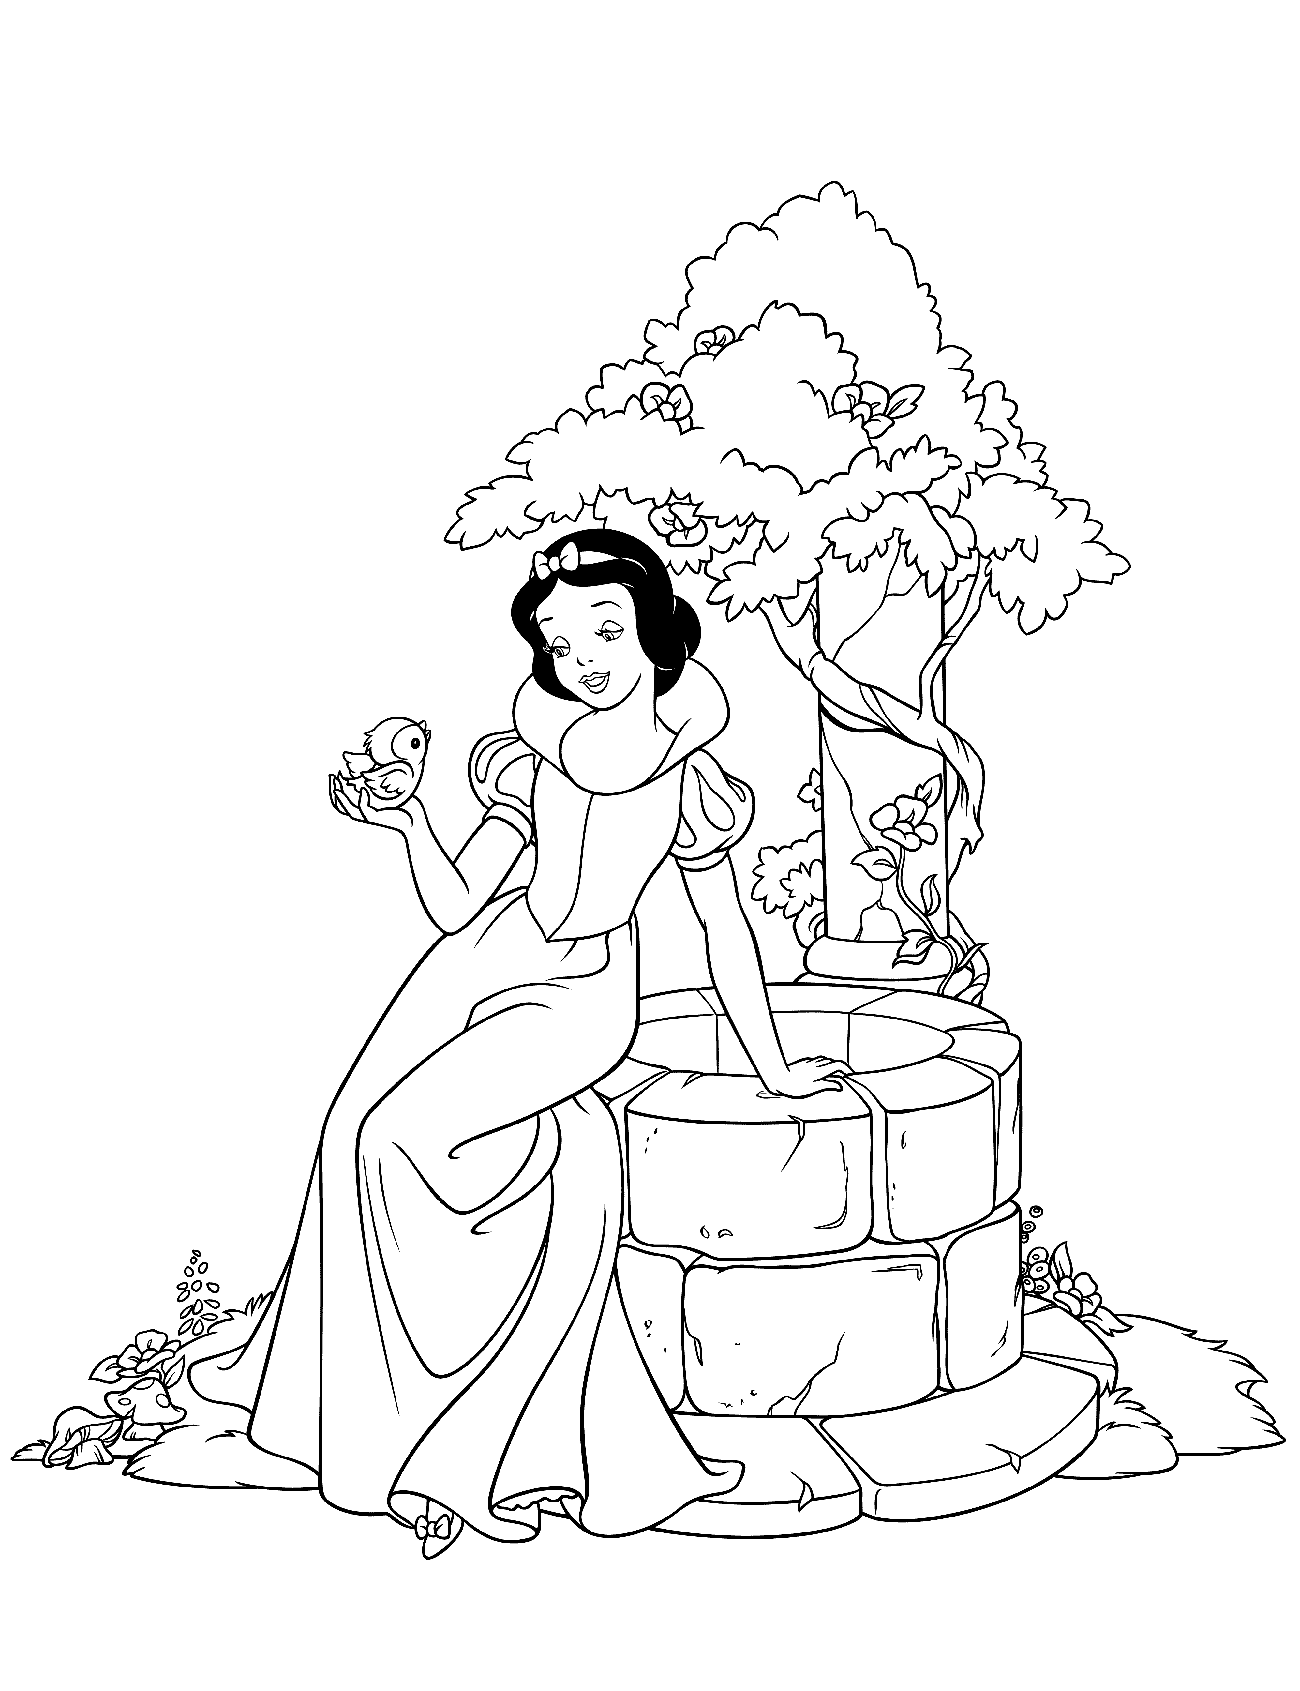 填色画 - 白雪公主與一籃子